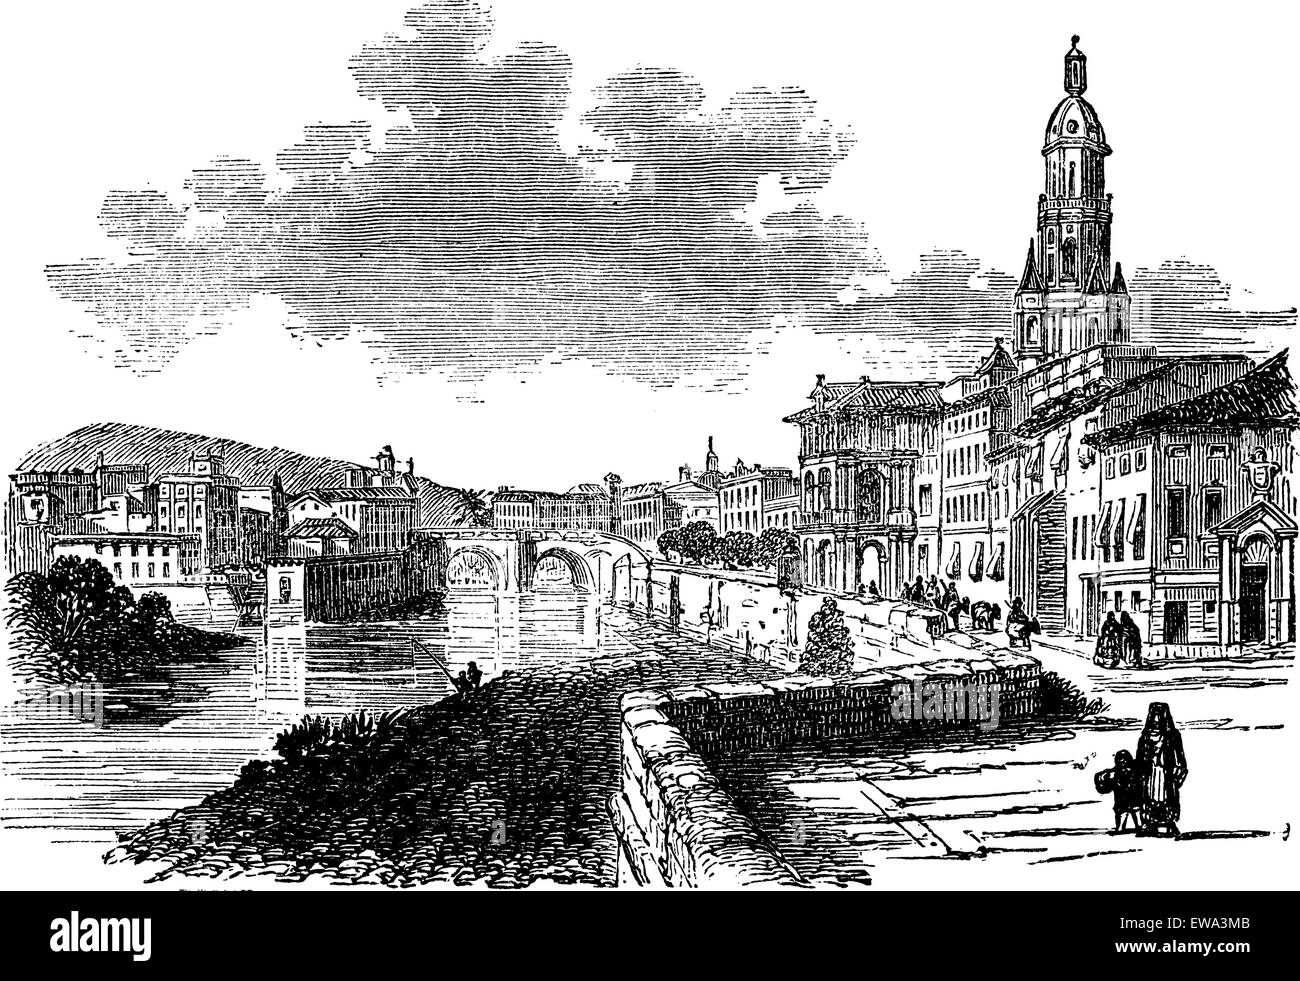 Stadt Murcia, Spanien, Vintage gravierte Darstellung, während des späten 1800 s. Trousset Enzyklopädie (1886-1891). Stock Vektor